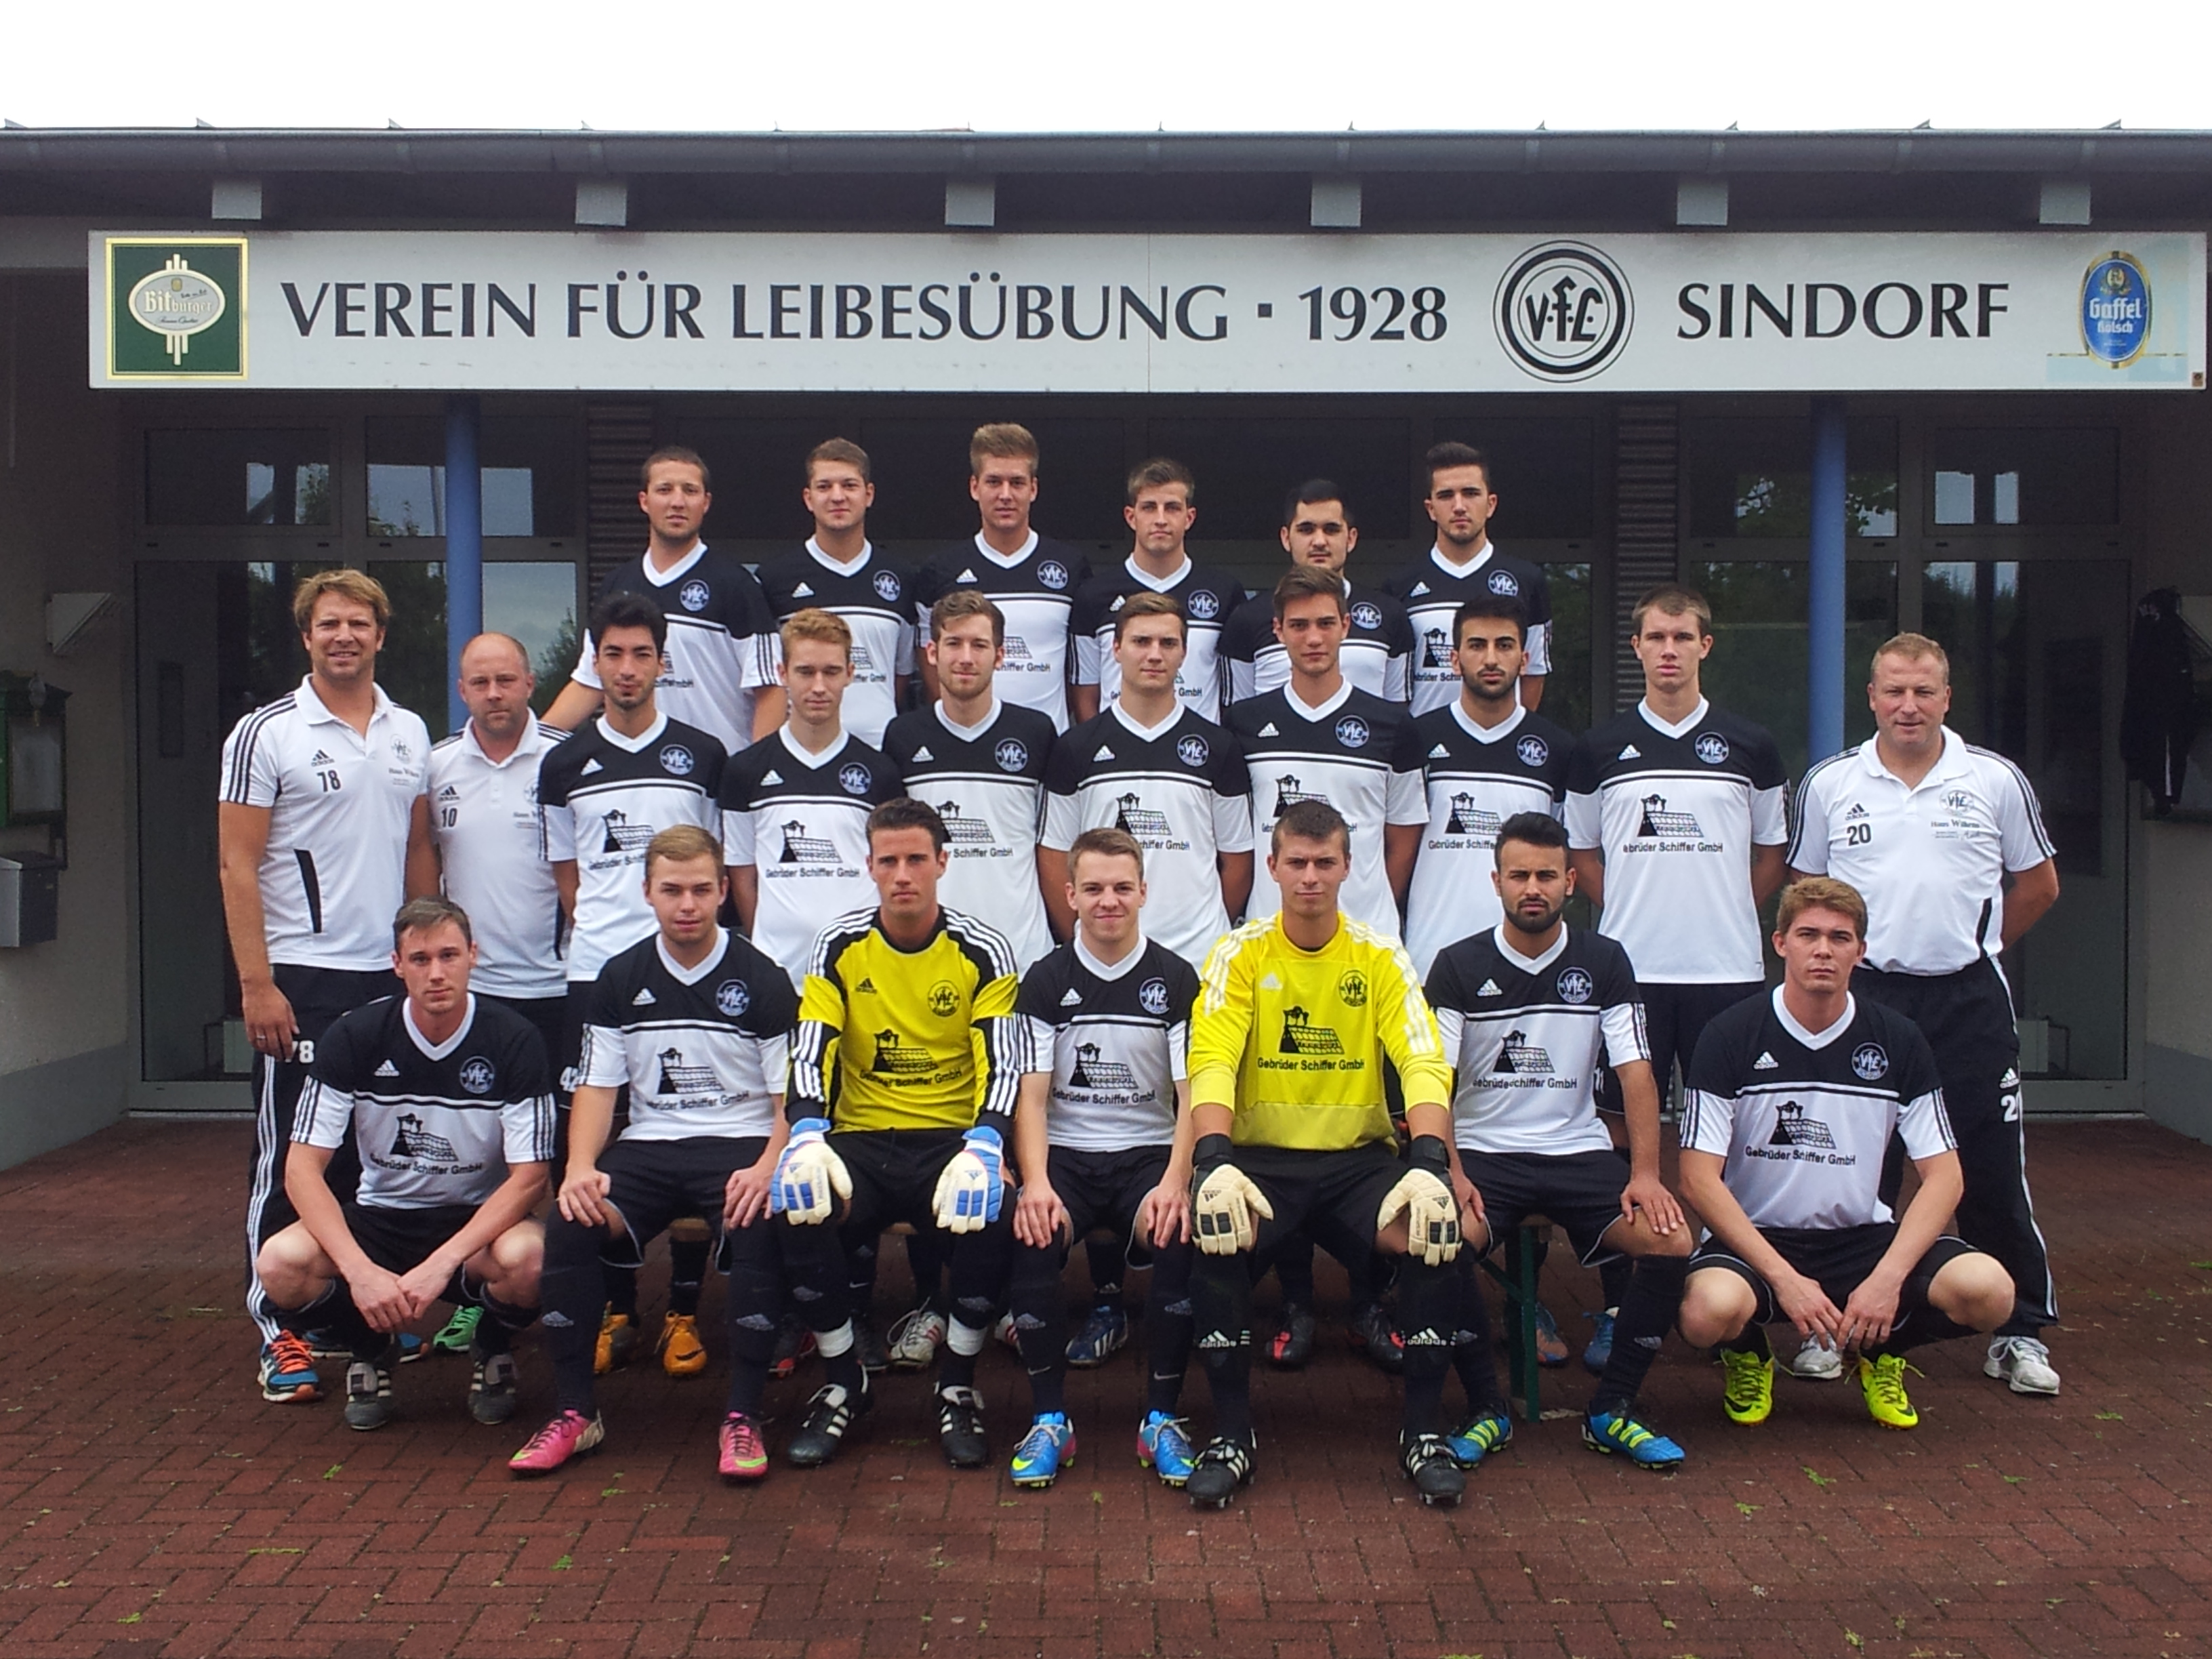 Mannschaftsfoto/Teamfoto von VfL Sindorf